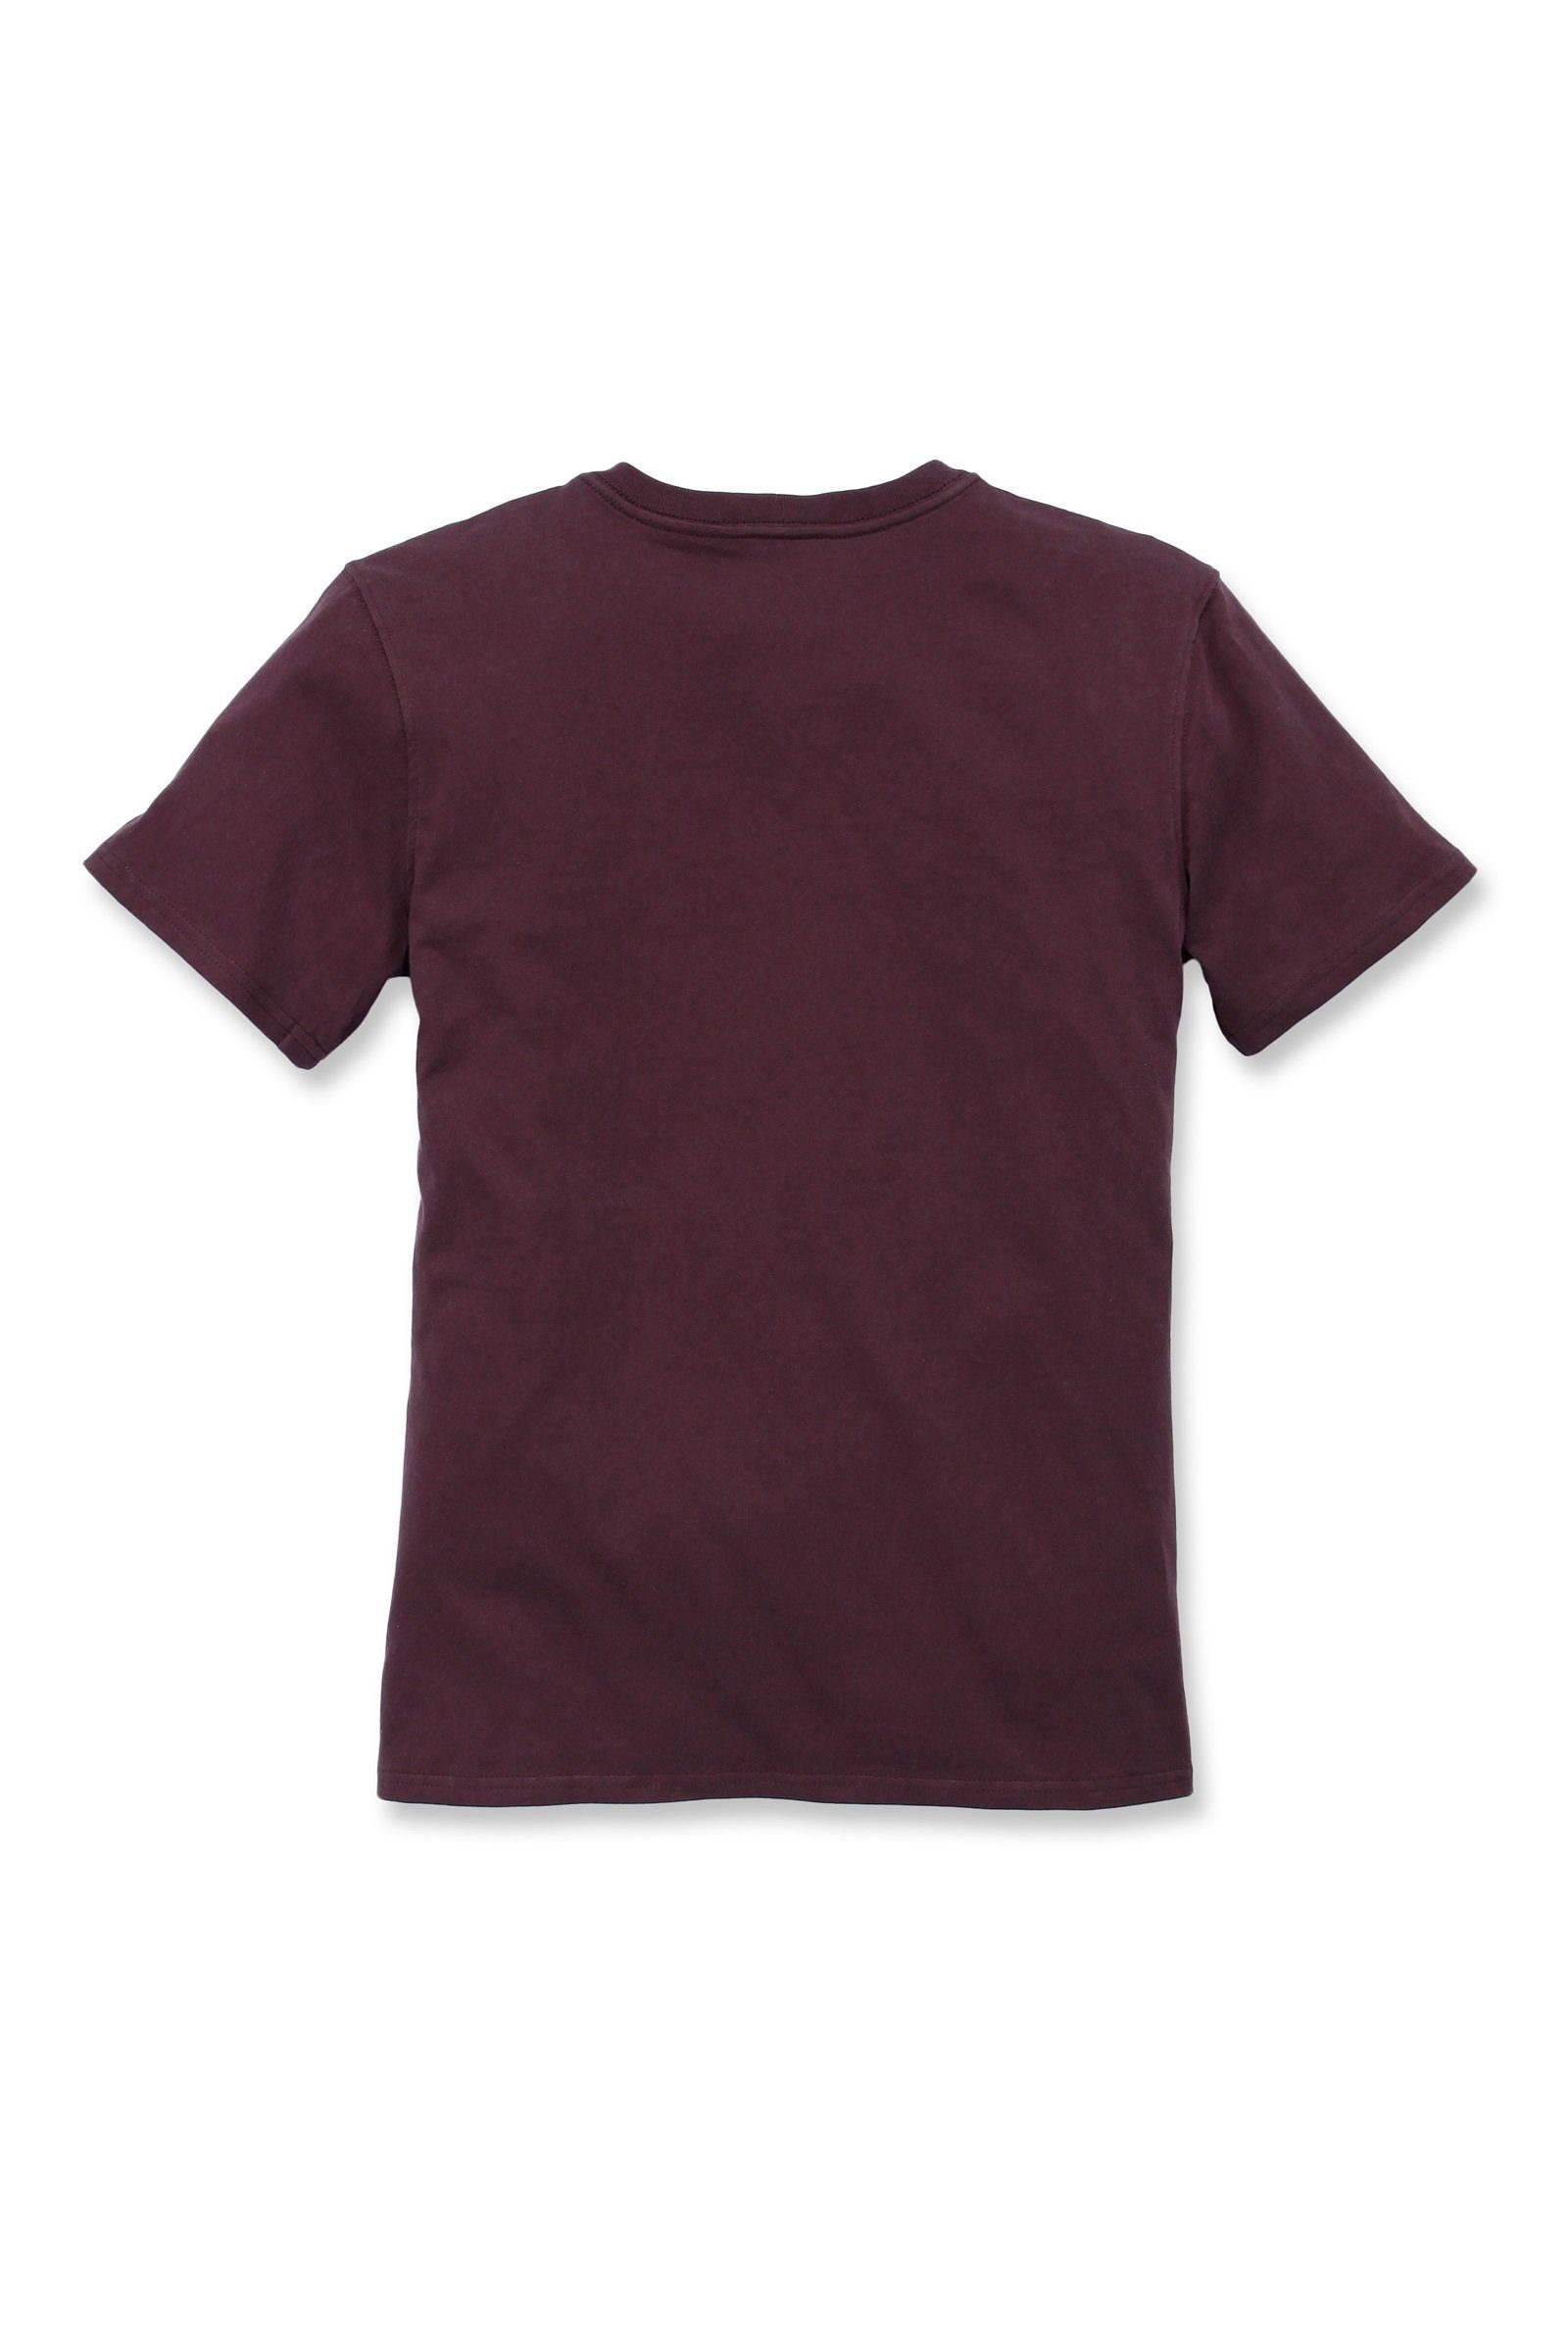 Carhartt Damen Adult deep Fit Carhartt wine T-Shirt T-Shirt Heavyweight Pocket Loose Short-Sleeve